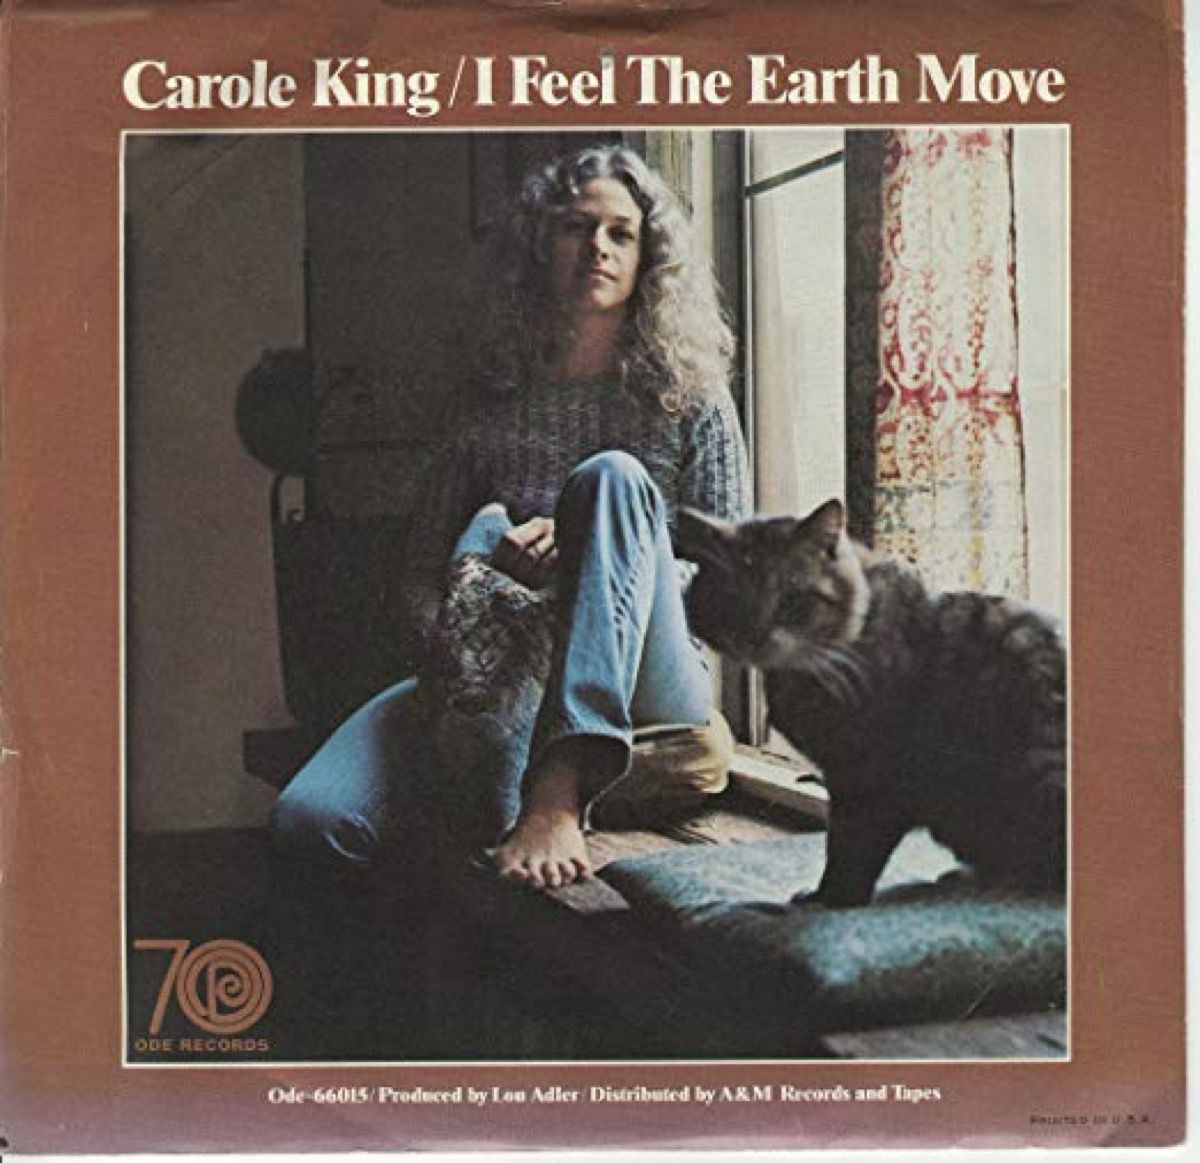 portada del álbum de carole king, siento que la tierra se mueve, canción del verano de 1971